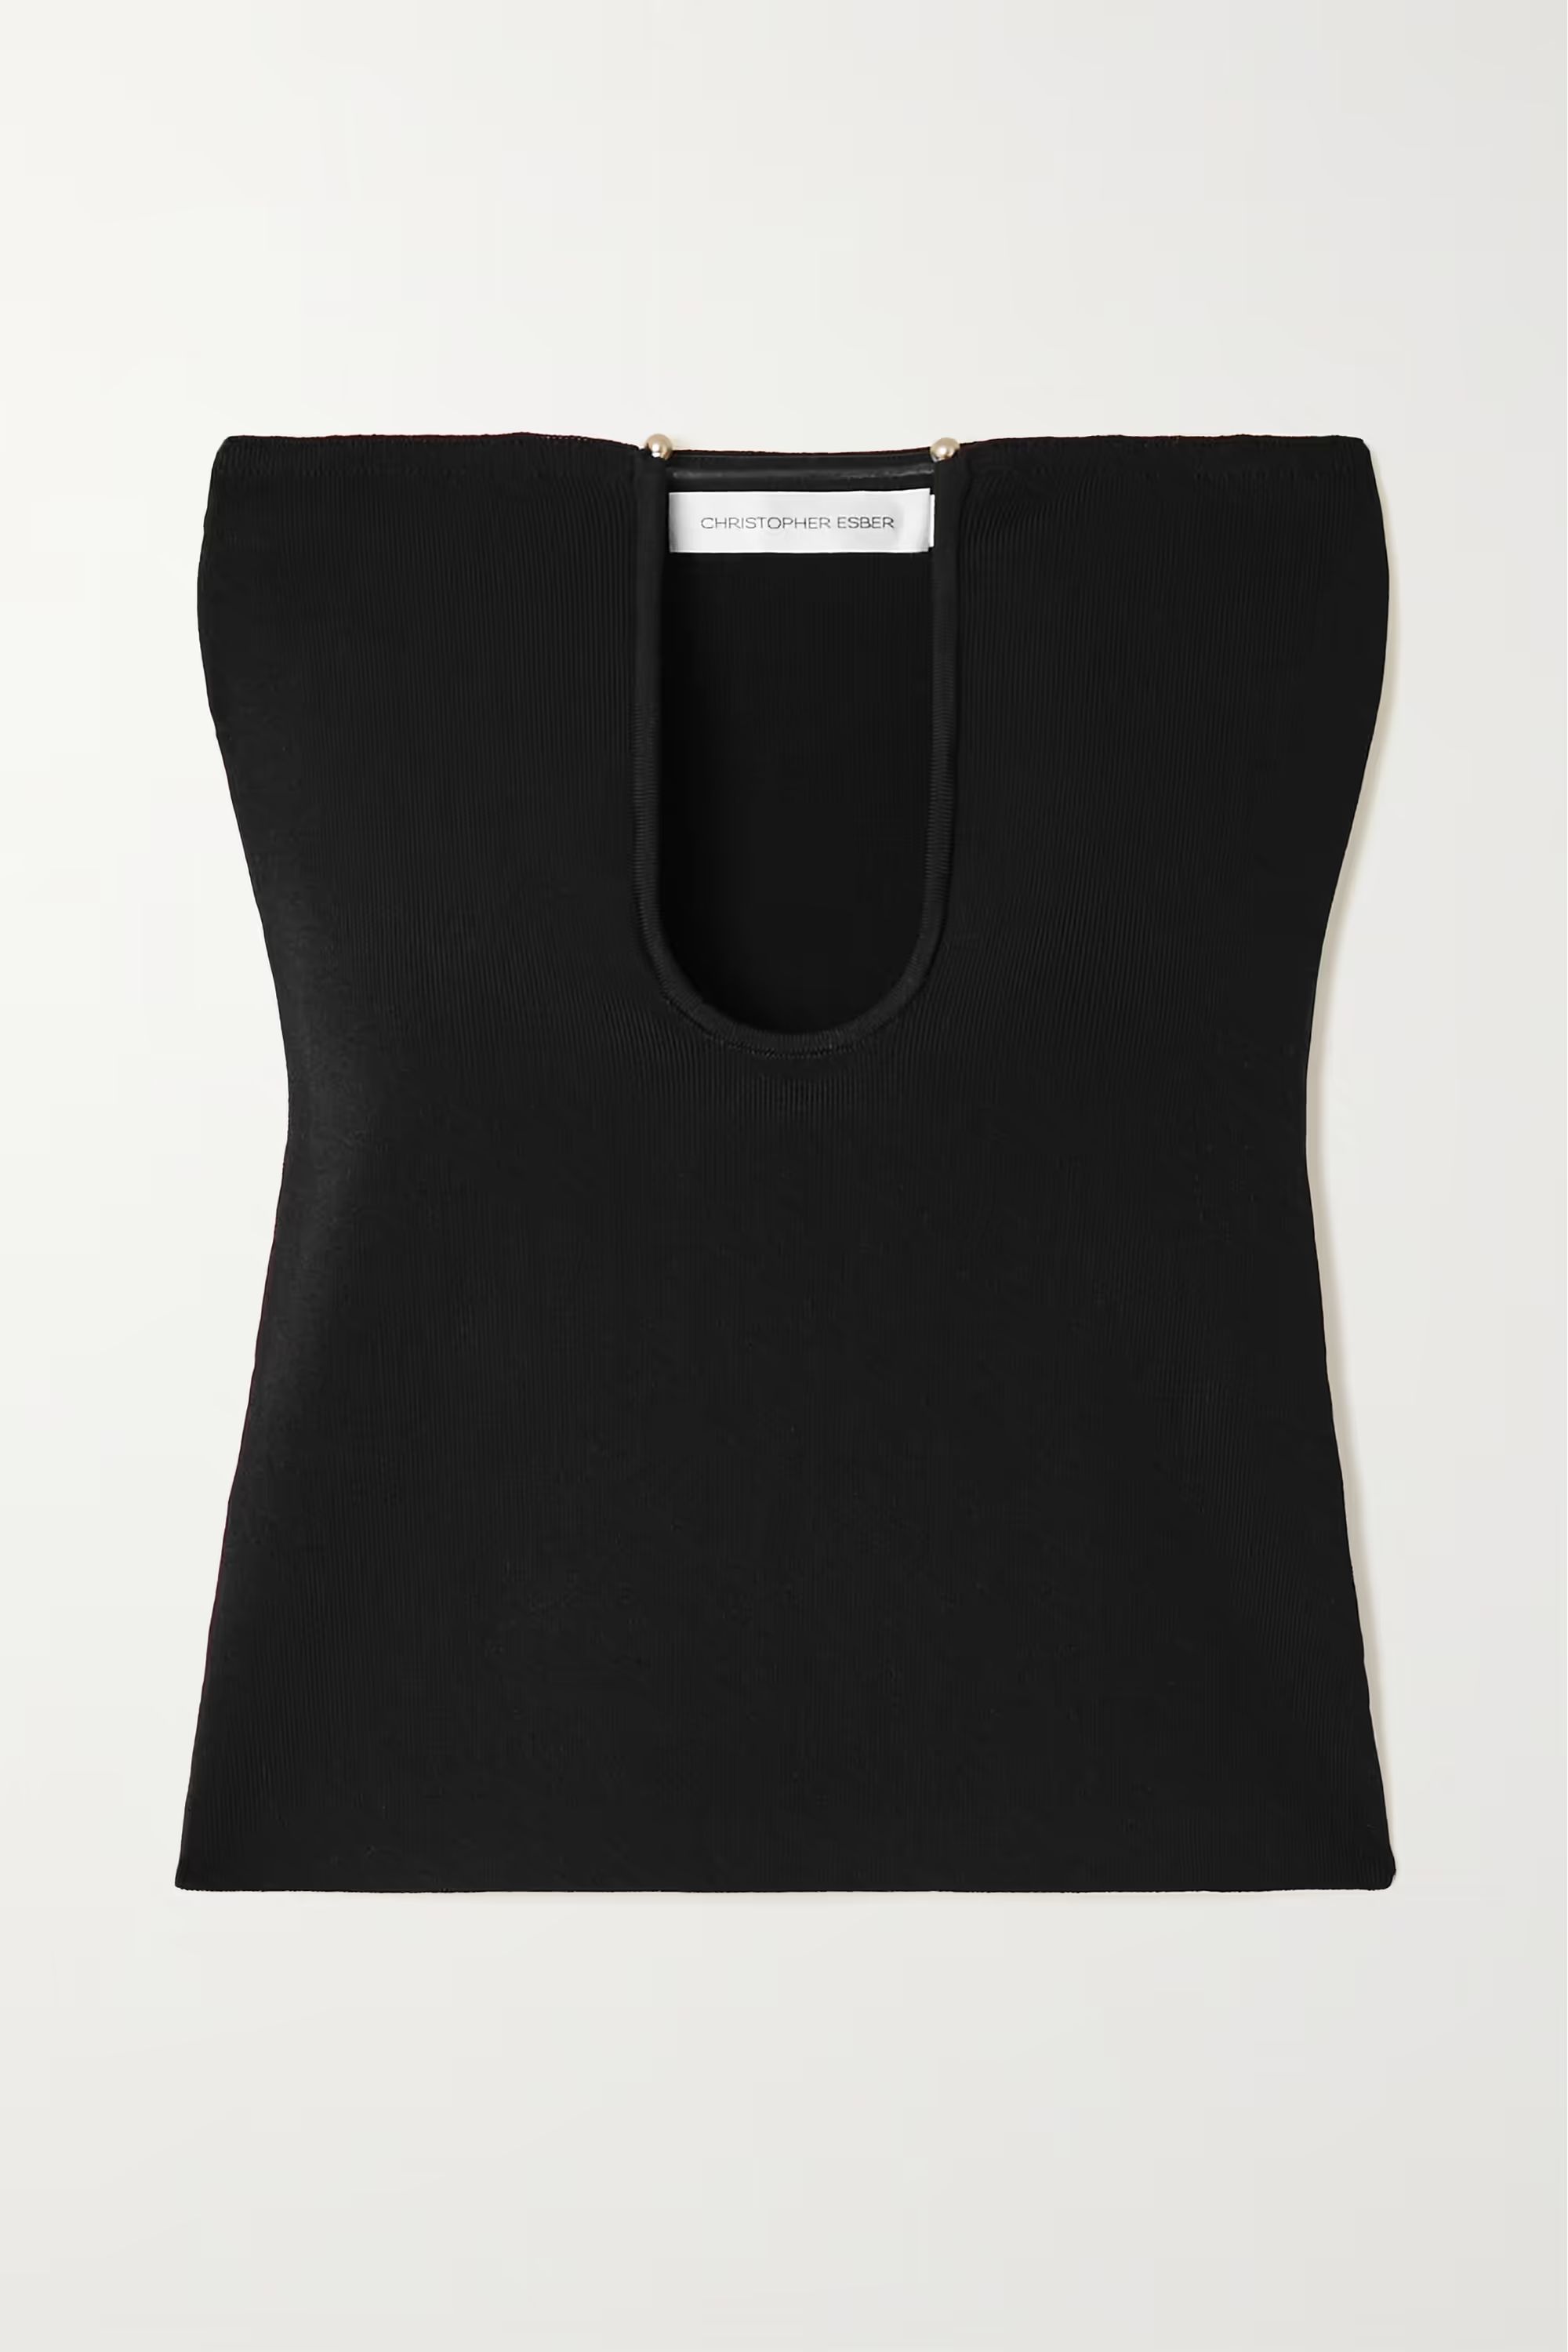 Black Strapless embellished ribbed-knit top | CHRISTOPHER ESBER | NET-A-PORTER | NET-A-PORTER (UK & EU)